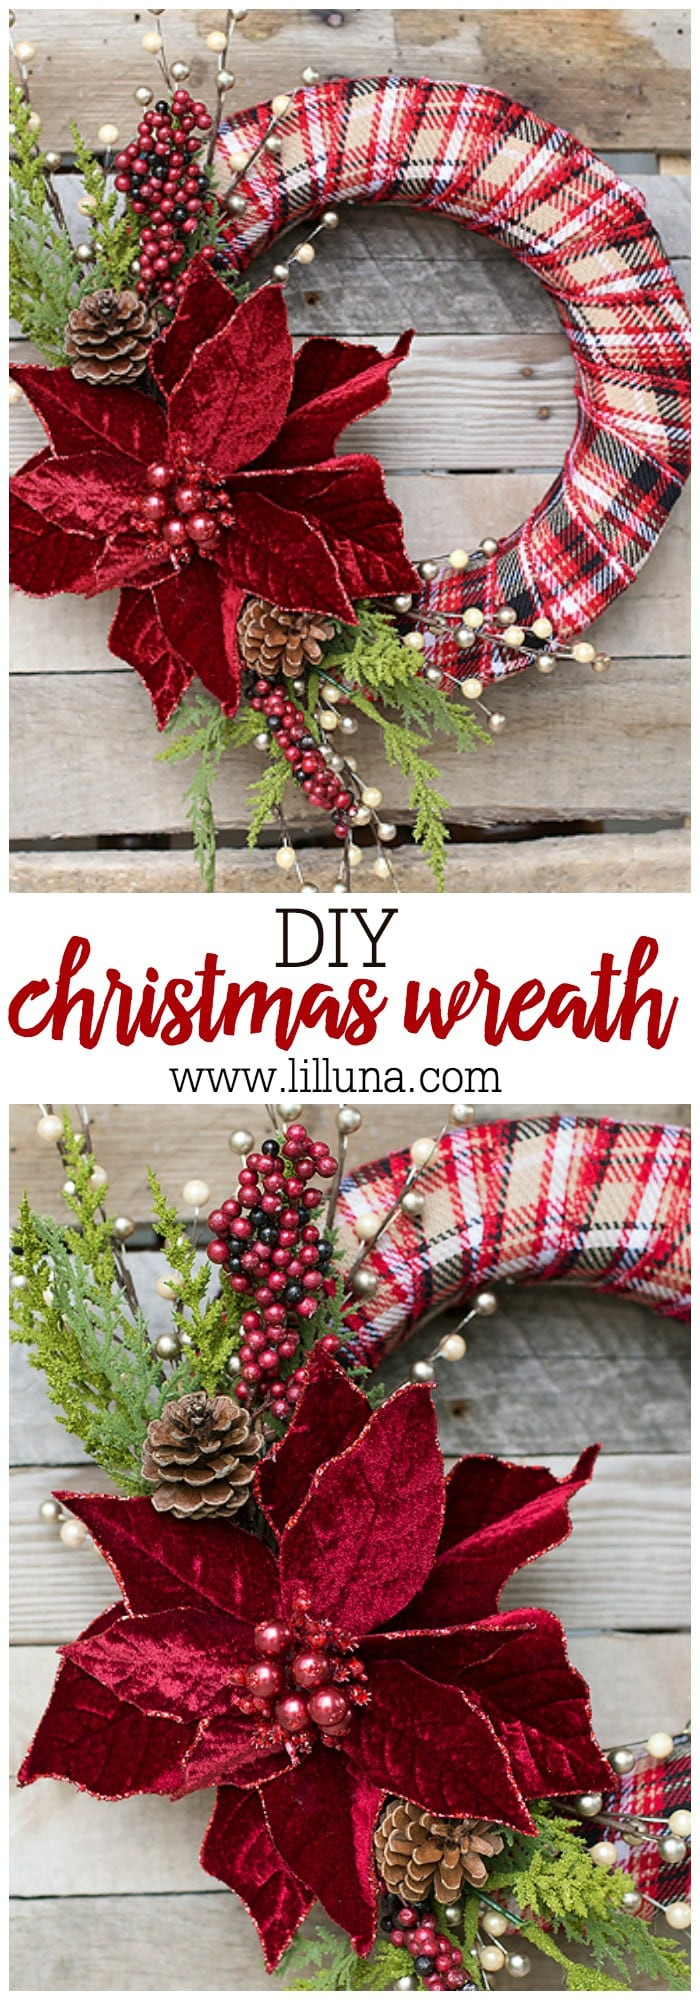 Christmas Wreath DIY
 DIY Christmas Wreath Lil Luna